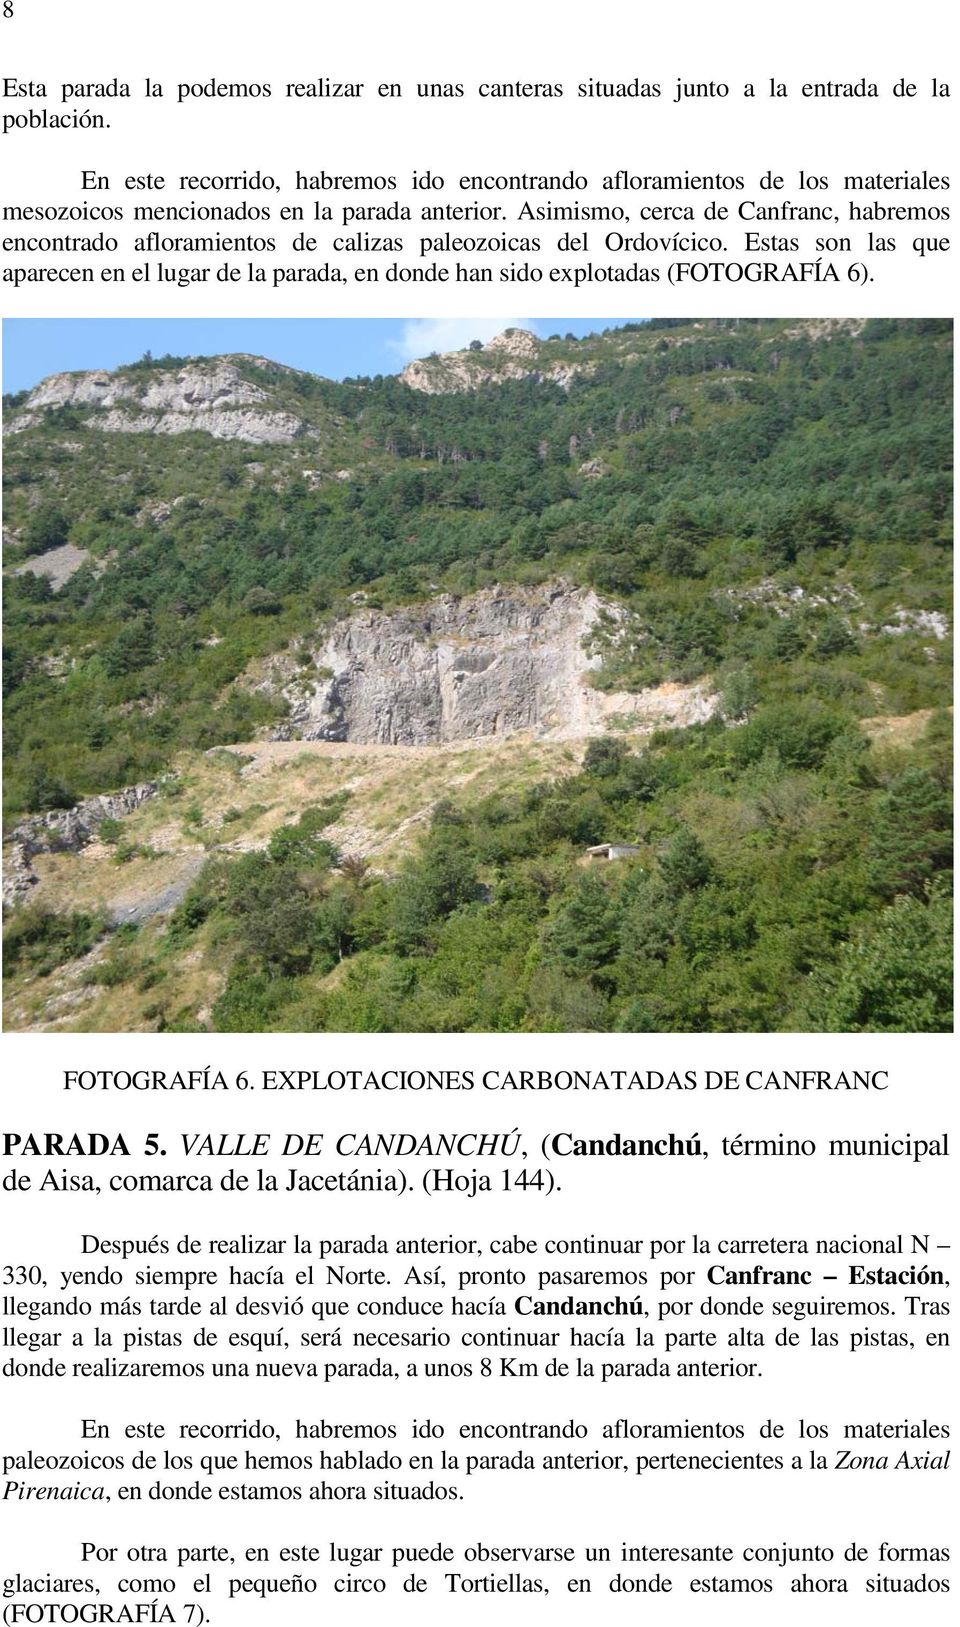 Asimismo, cerca de Canfranc, habremos encontrado afloramientos de calizas paleozoicas del Ordovícico. Estas son las que aparecen en el lugar de la parada, en donde han sido explotadas (FOTOGRAFÍA 6).